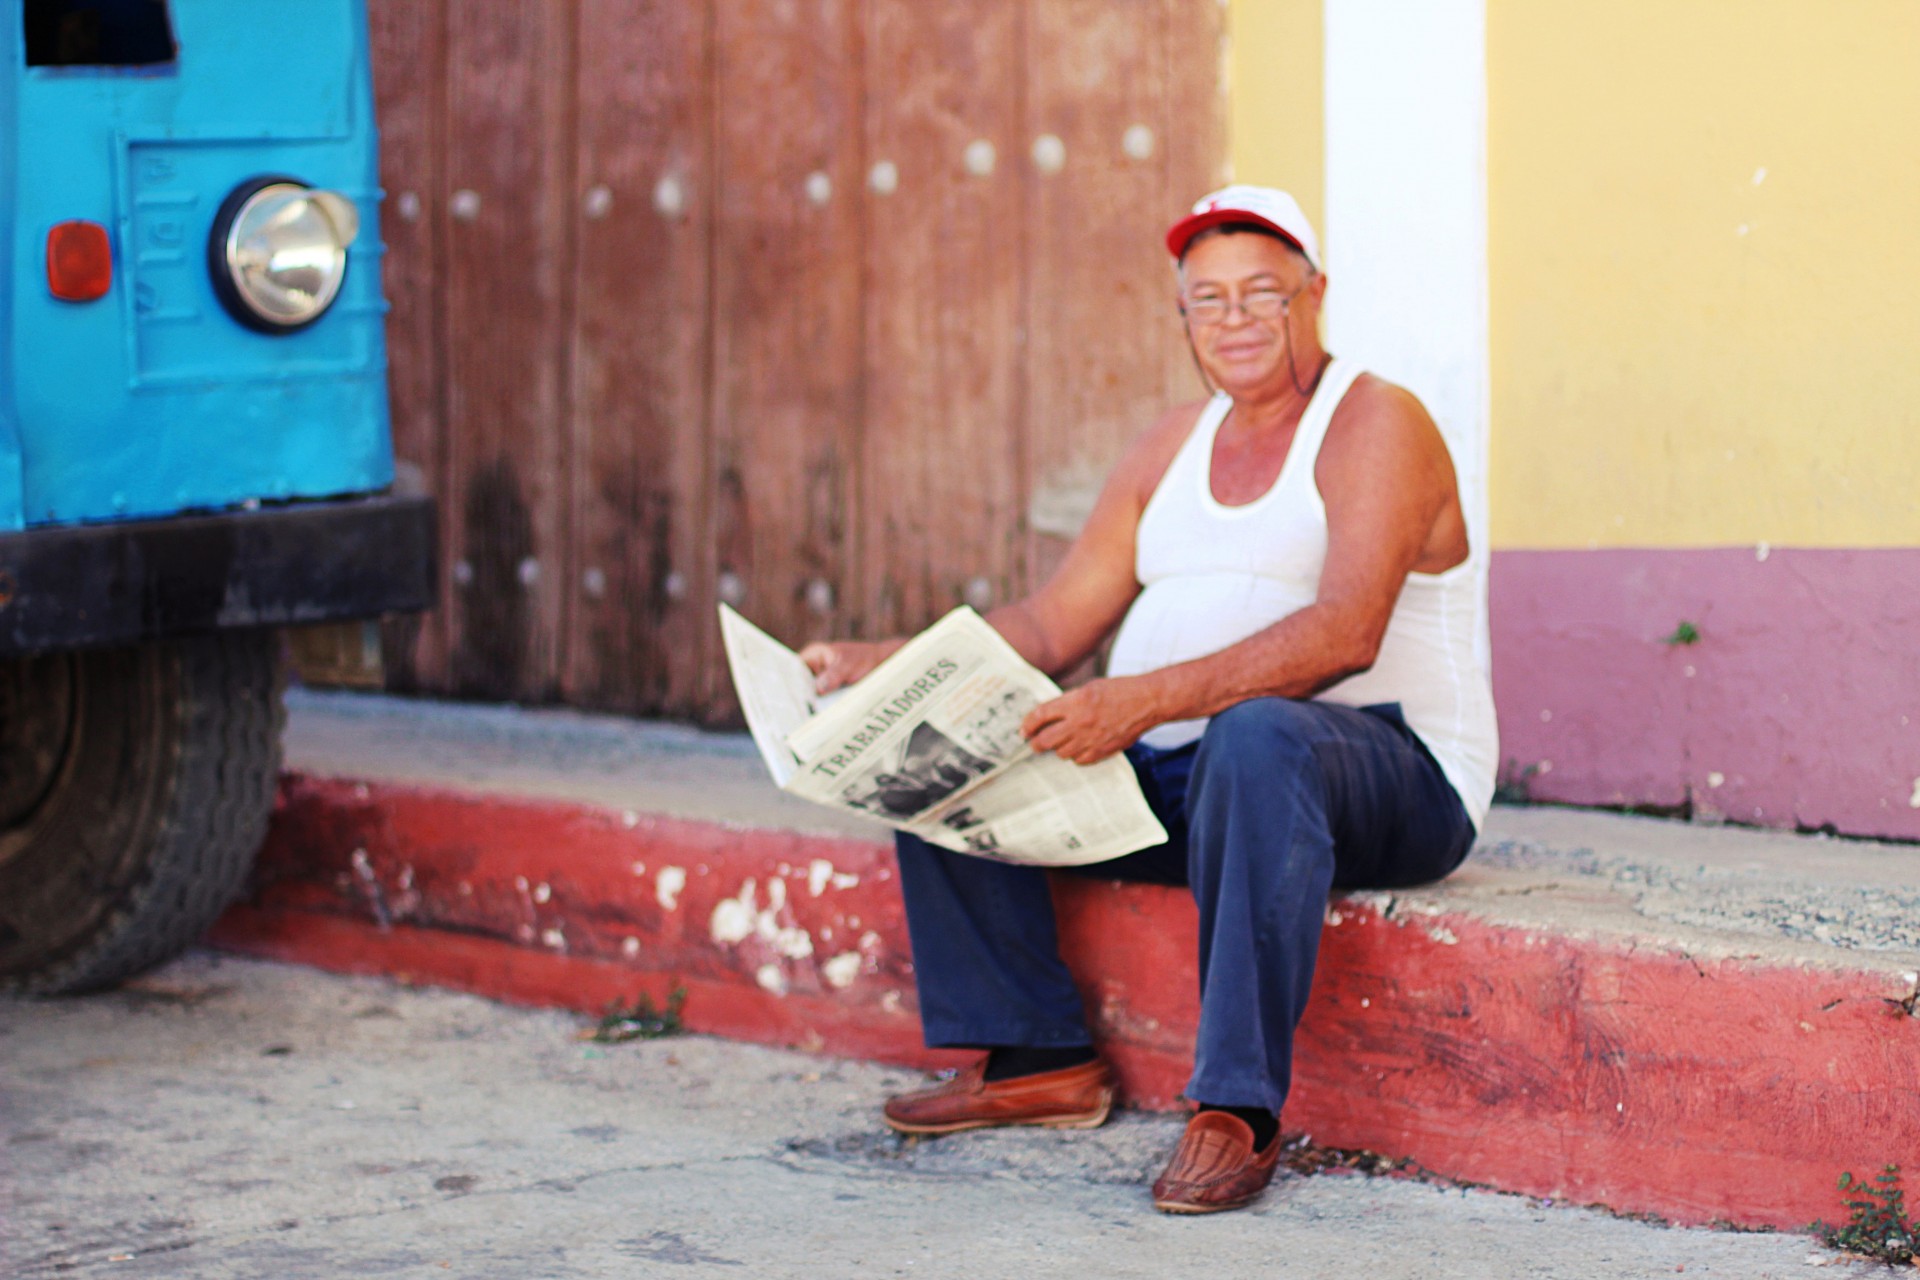 veraKoh. About Cuba